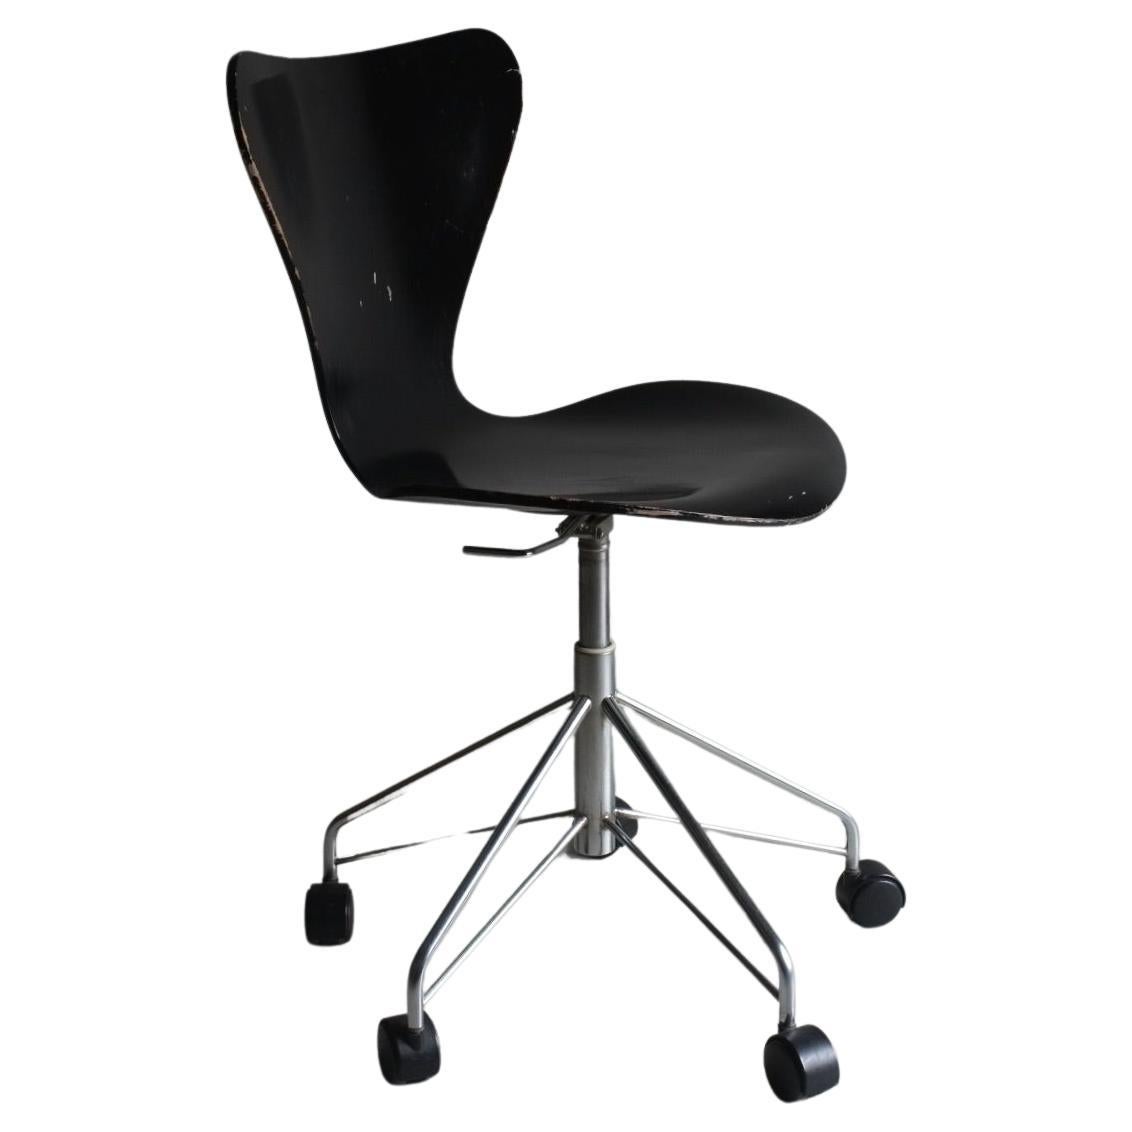 3117 Black Swivel Chair by Arne Jacobsen for Fritz Hansen